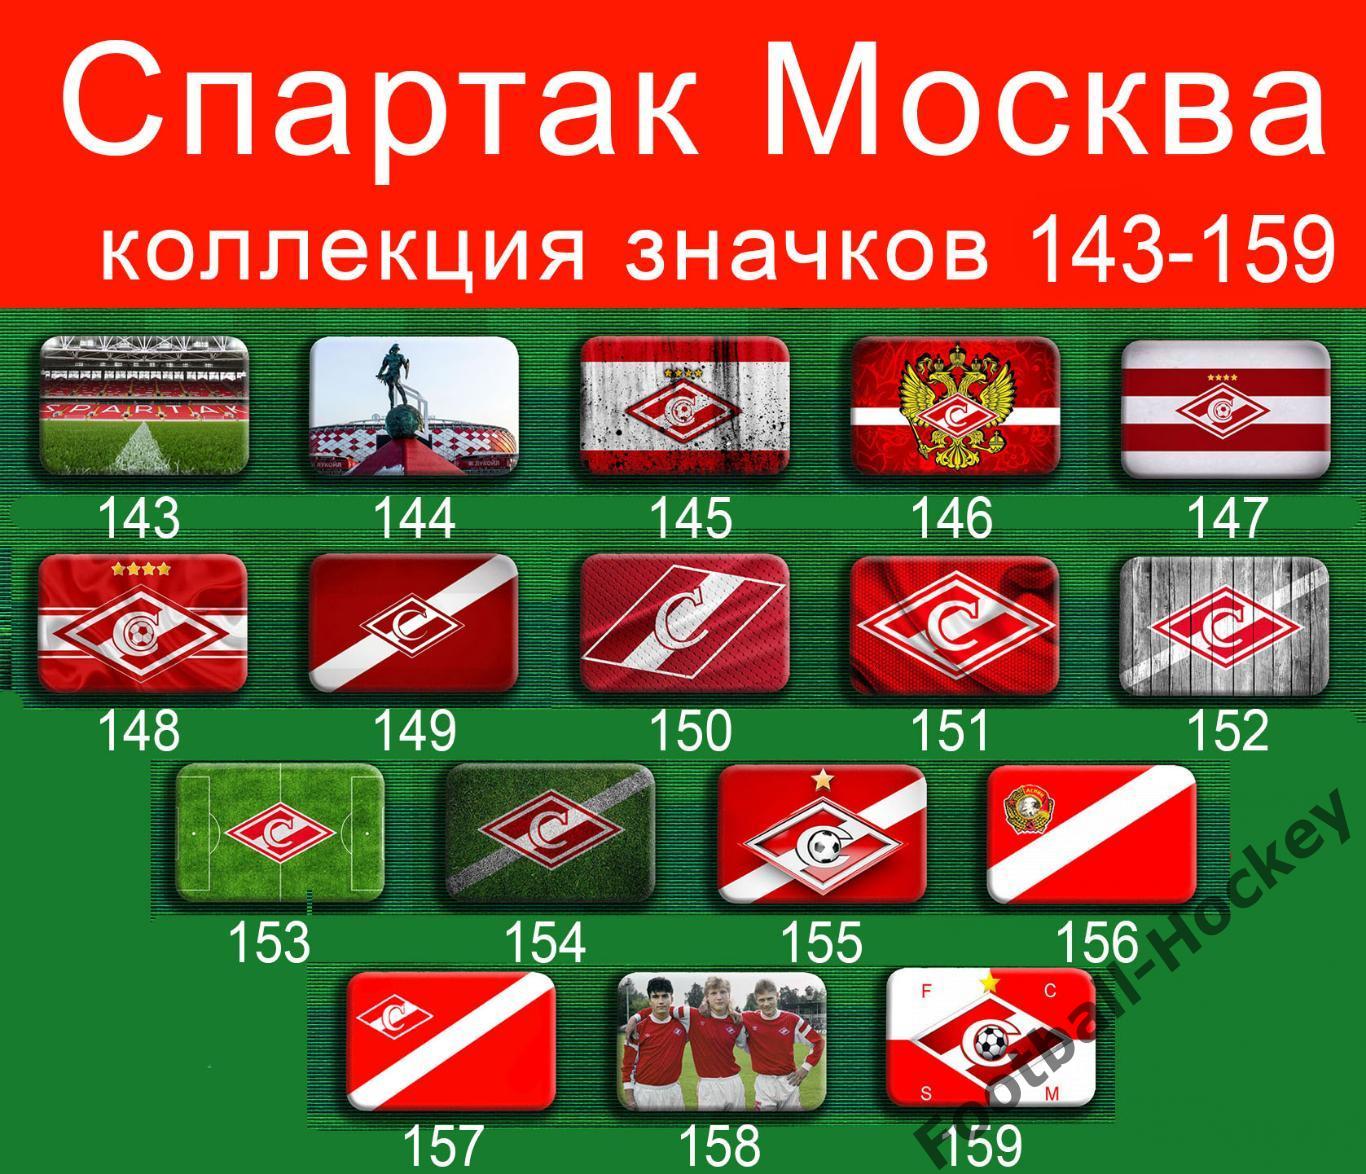 Спартак Москва 159 значков - 143-159